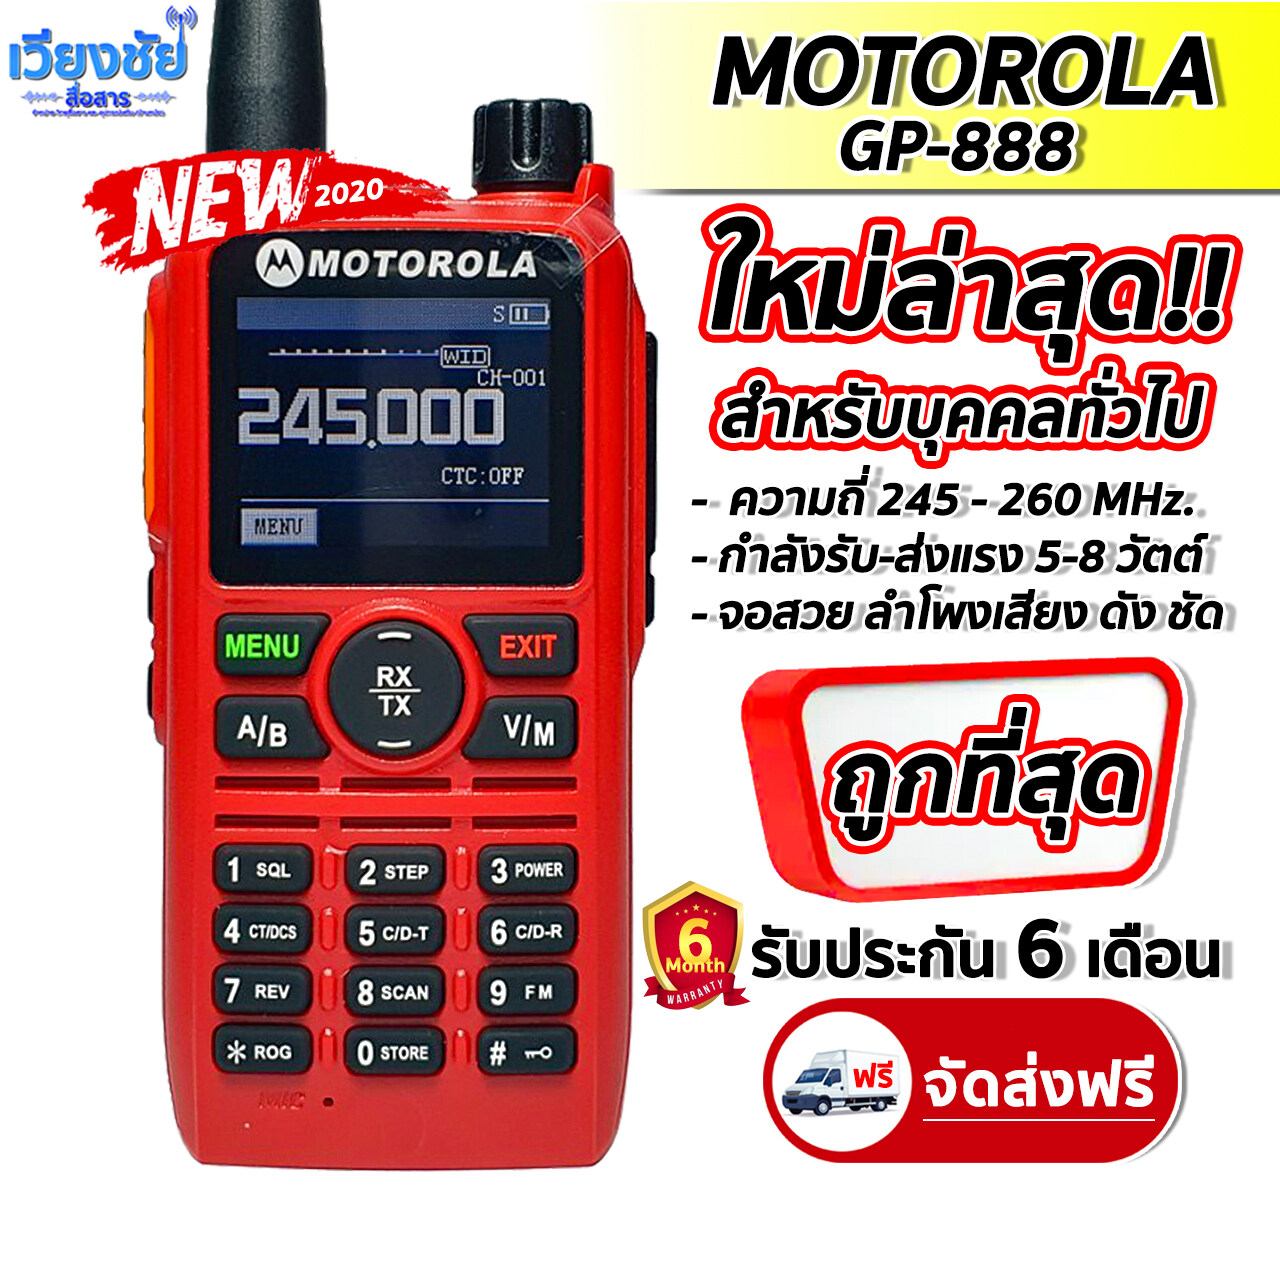 วิทยุสื่อสารใหม่ล่าสุด MOTOROLA GP-888 เครื่องแดง ความถี่ 245 - 26 MHz. บันทึกช่องได้ 240 ช่อง จอสวย หูไว กำลังส่ง 5-8W รับ-ส่งดี หูไว เสียงดังชัดเจน